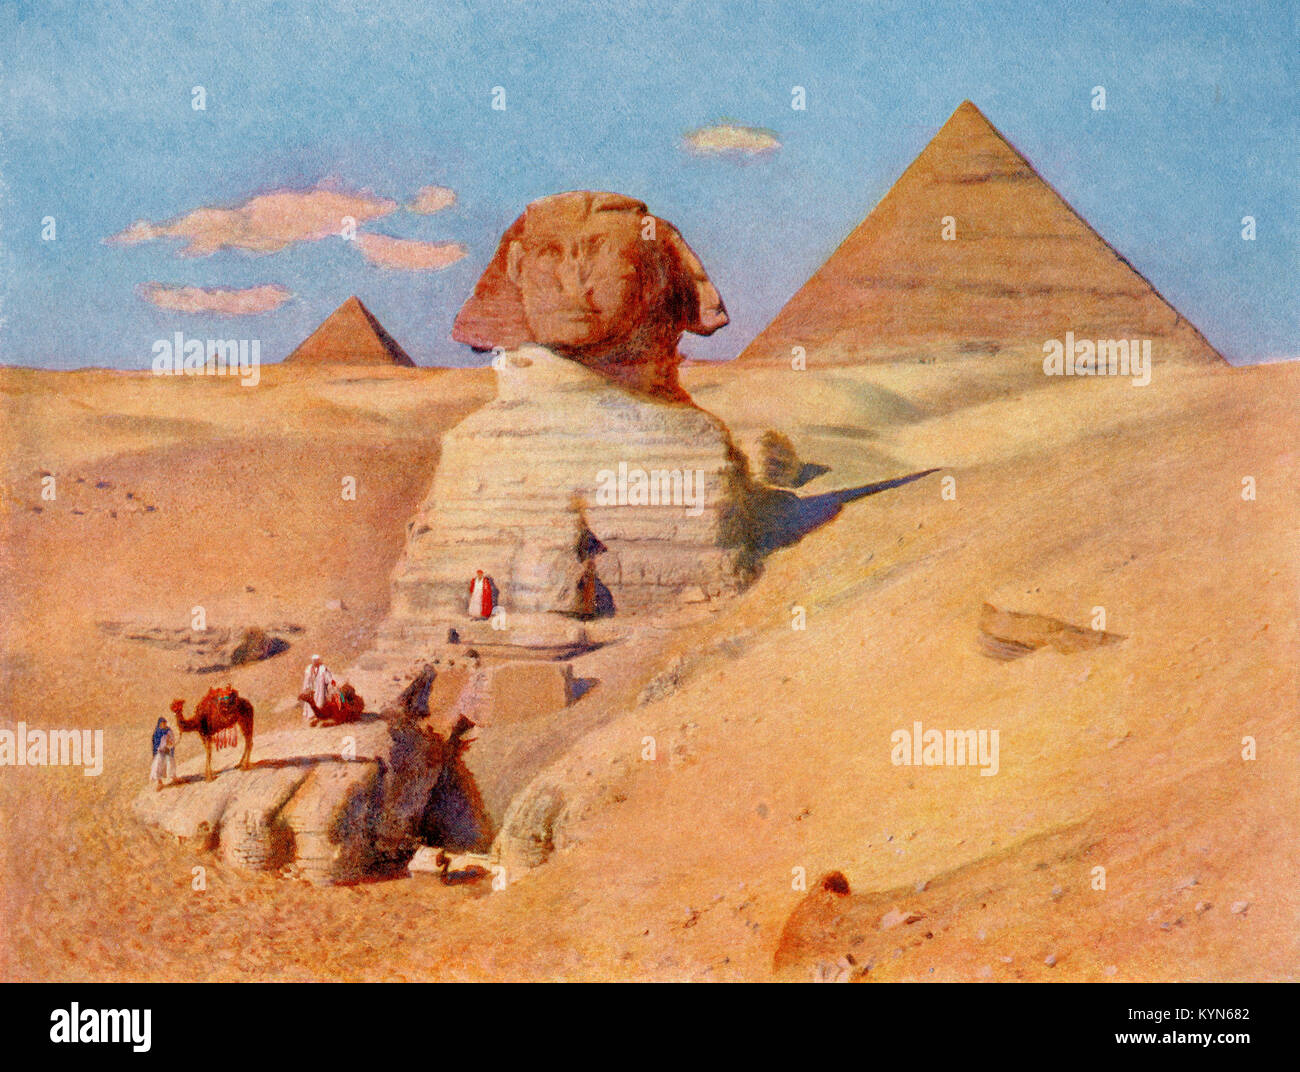 Le grand Sphinx dans la pyramide de Gizeh, Karnak temple complexe, Le Caire, Égypte. Une sculpture massive en général d'avis qu'elles représentent le Pharaon Khafré. Des merveilles du monde, publié vers 1920. Banque D'Images